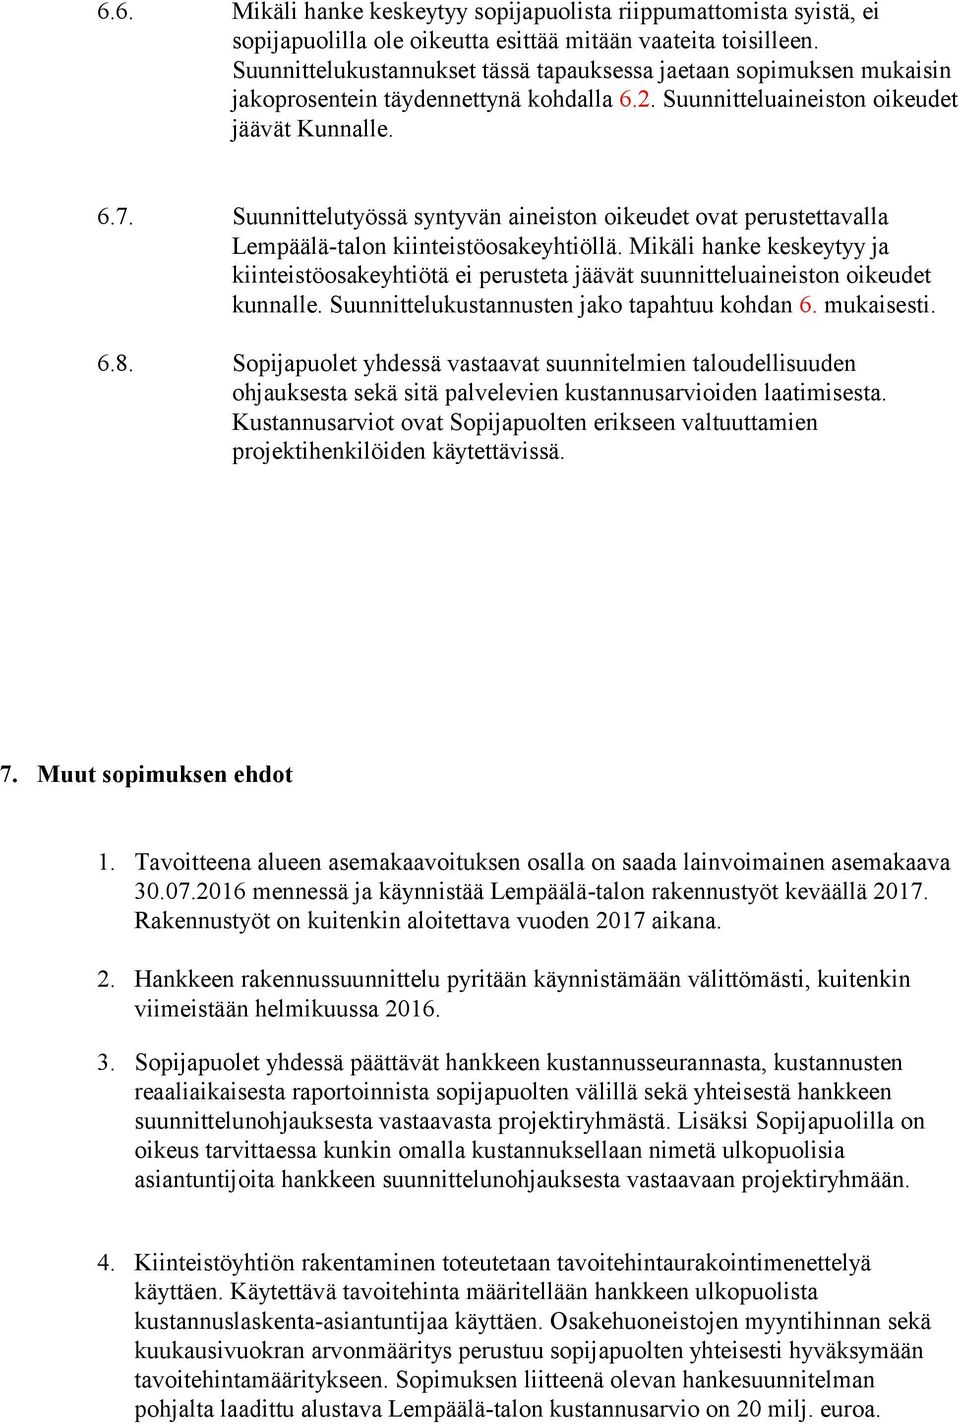 Suunnittelutyössä syntyvän aineiston oikeudet ovat perustettavalla Lempäälä-talon kiinteistöosakeyhtiöllä.